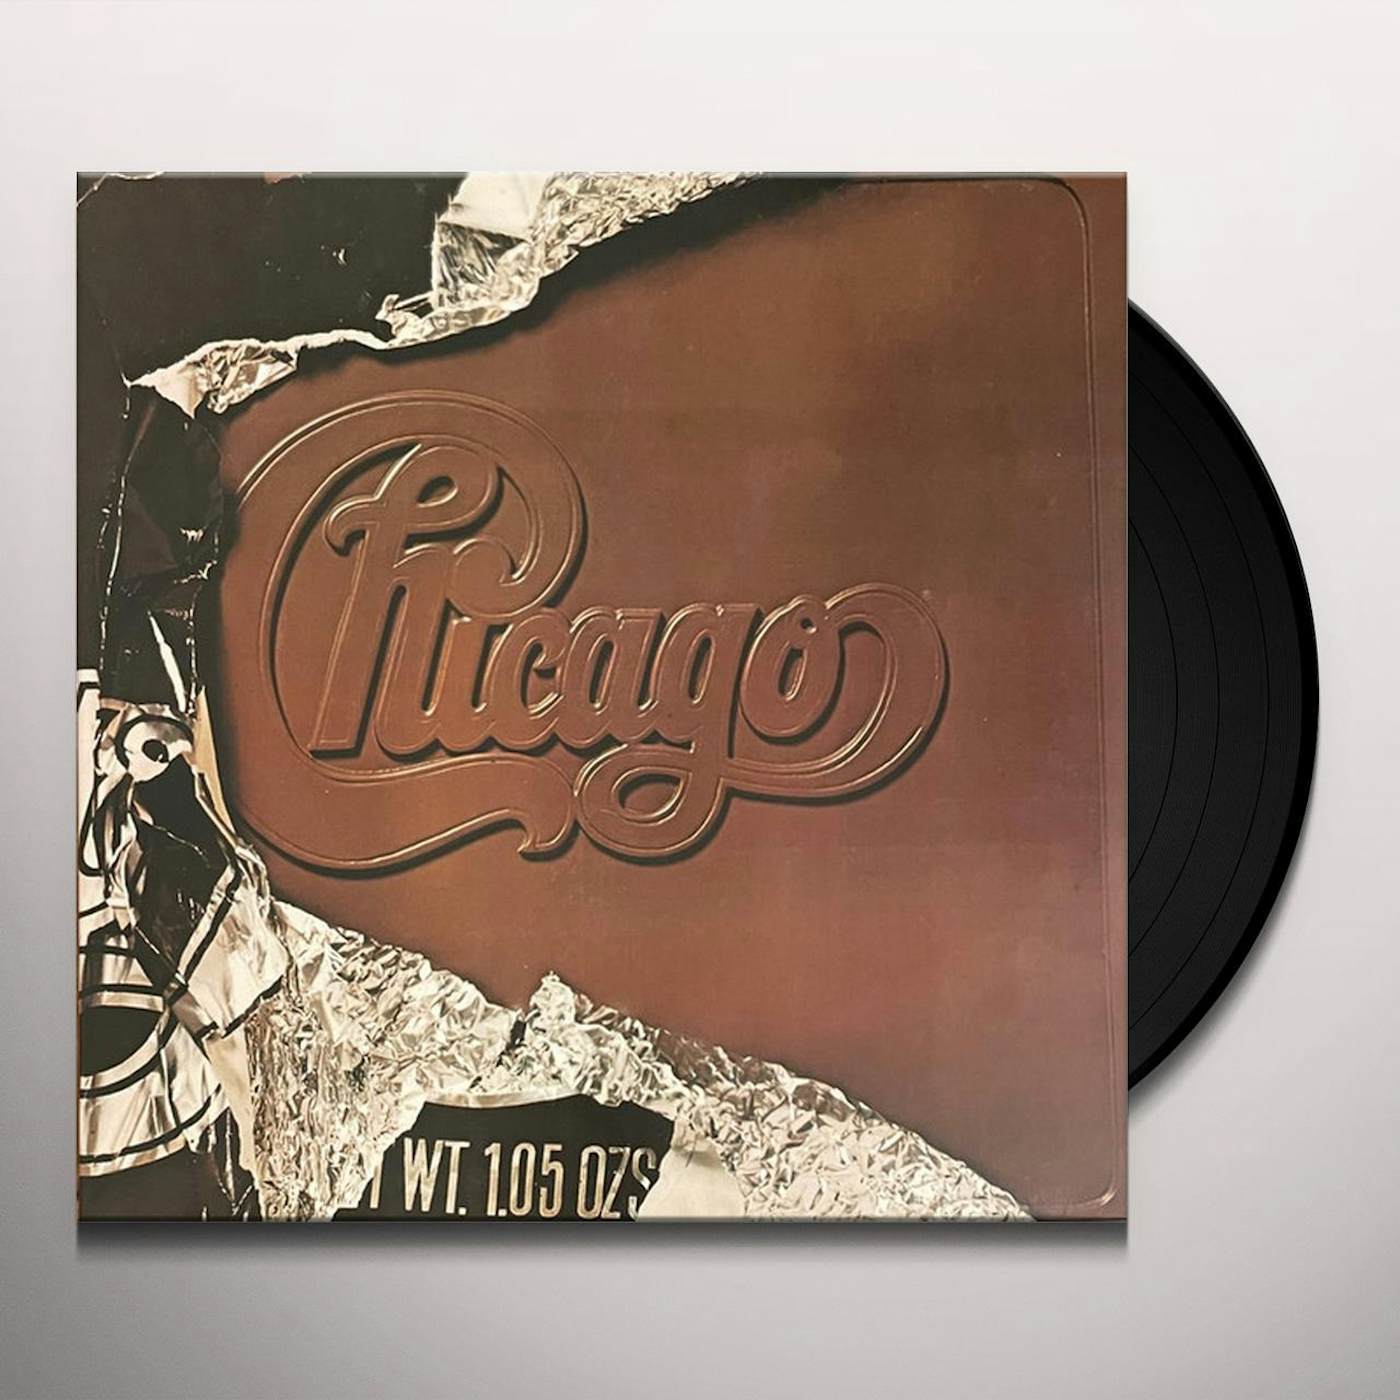 Chicago V + Bonus 7 (Rhino Red Vinyl)